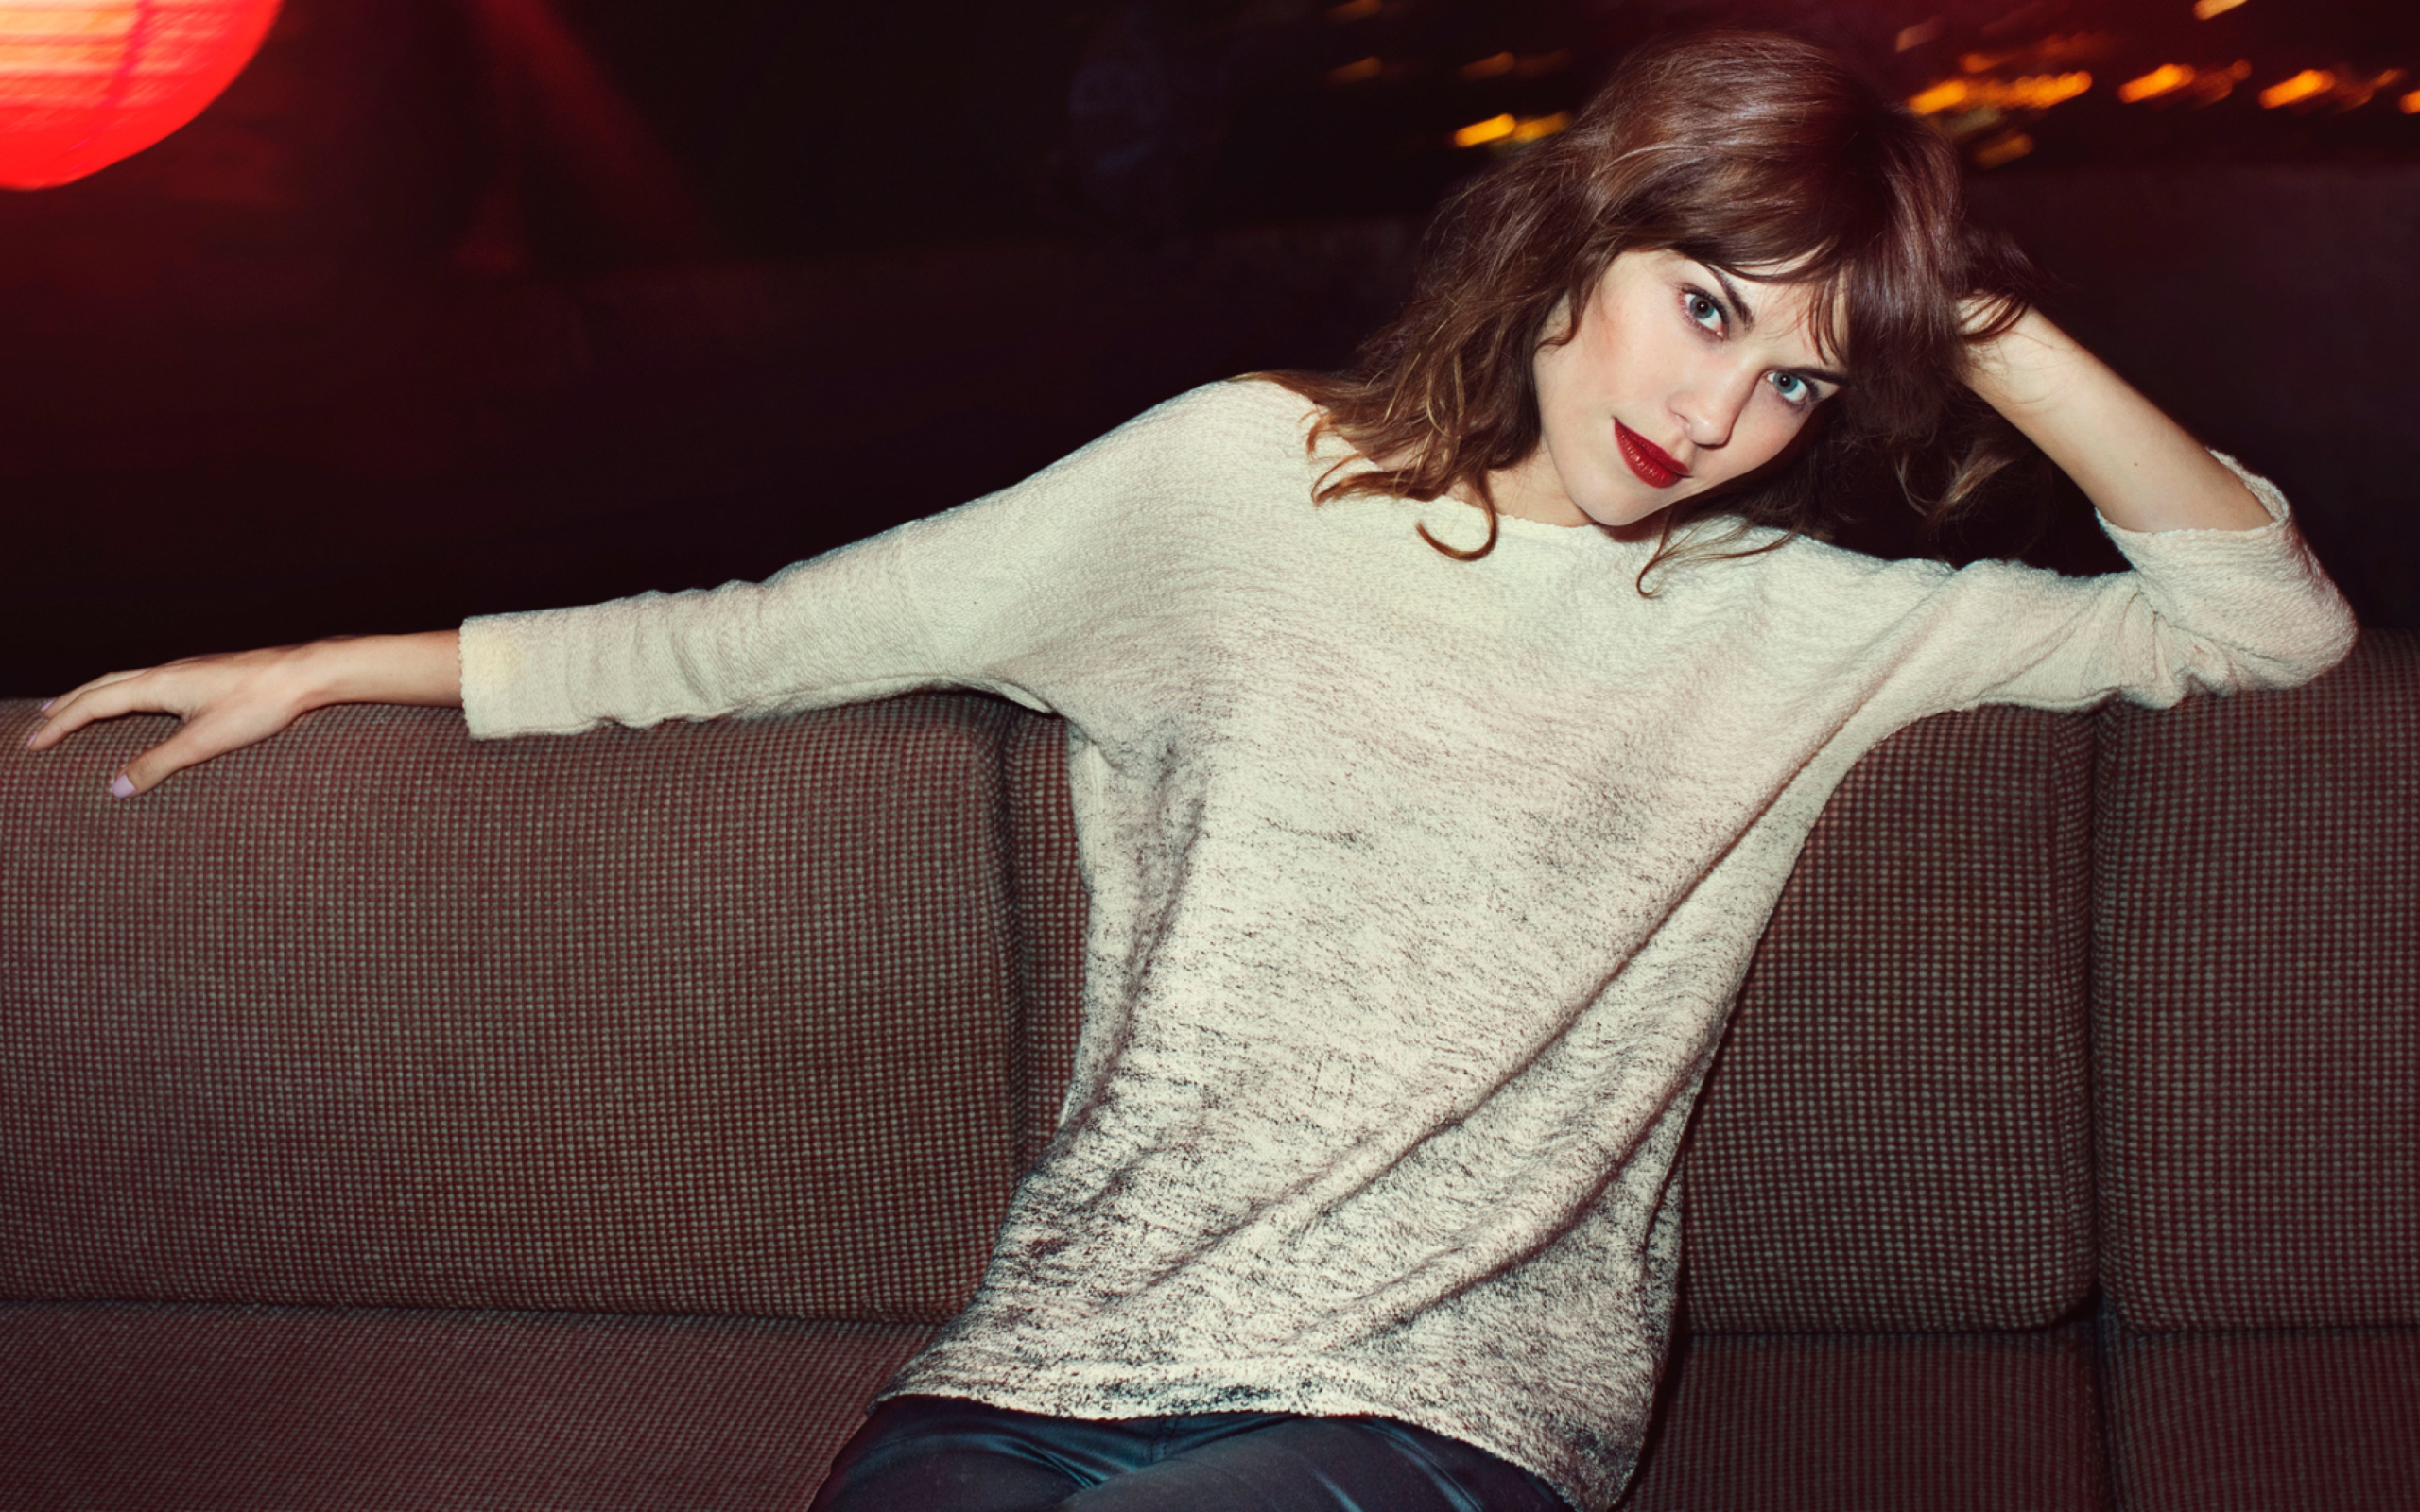 Красивая девушка модель Алекса Чанг сидит на диване